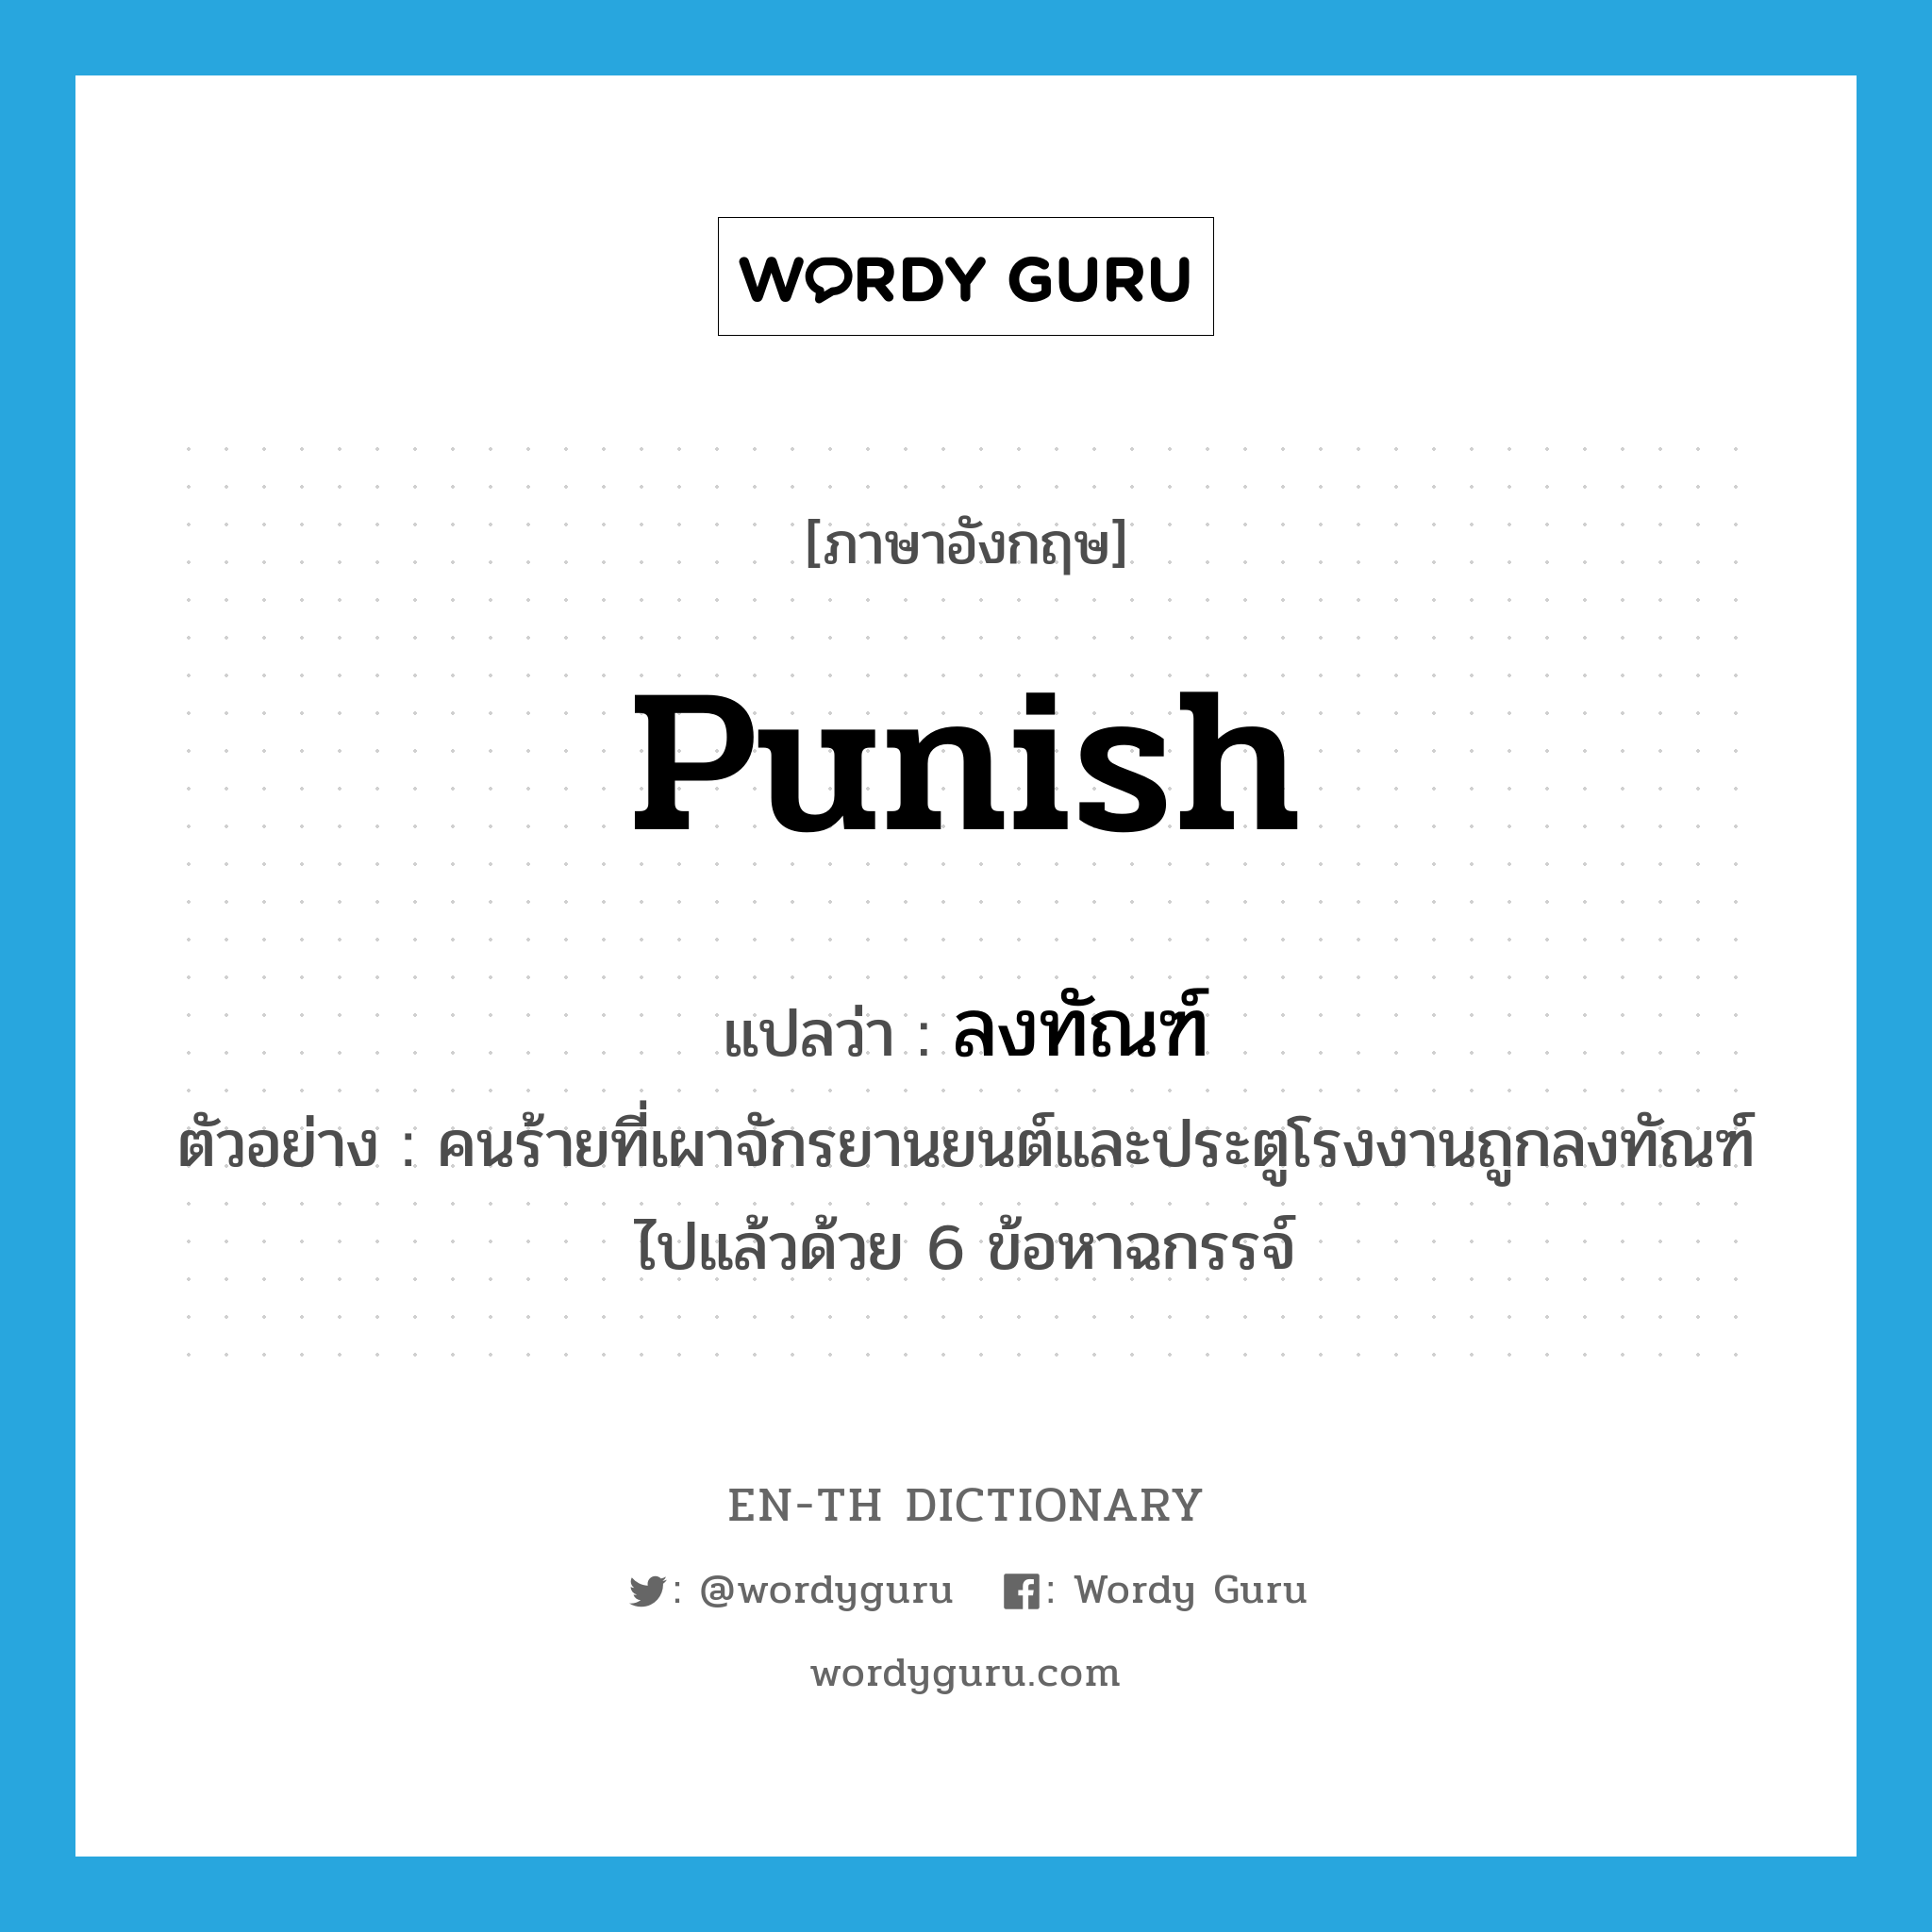 punish แปลว่า?, คำศัพท์ภาษาอังกฤษ punish แปลว่า ลงทัณฑ์ ประเภท V ตัวอย่าง คนร้ายที่เผาจักรยานยนต์และประตูโรงงานถูกลงทัณฑ์ไปแล้วด้วย 6 ข้อหาฉกรรจ์ หมวด V